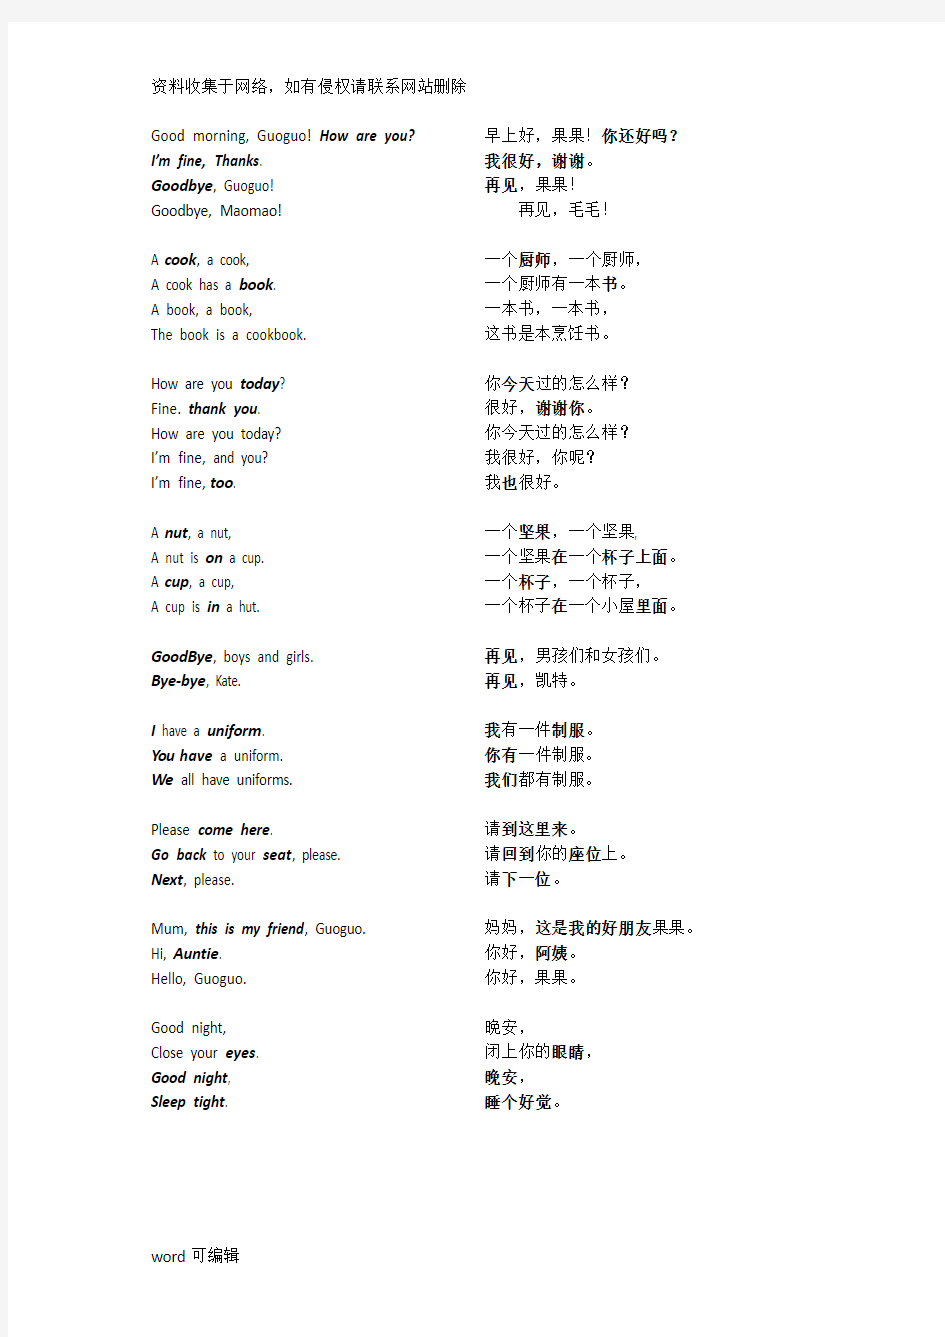 北京小学英语一年级上册课本复习资料(完整版)演示教学